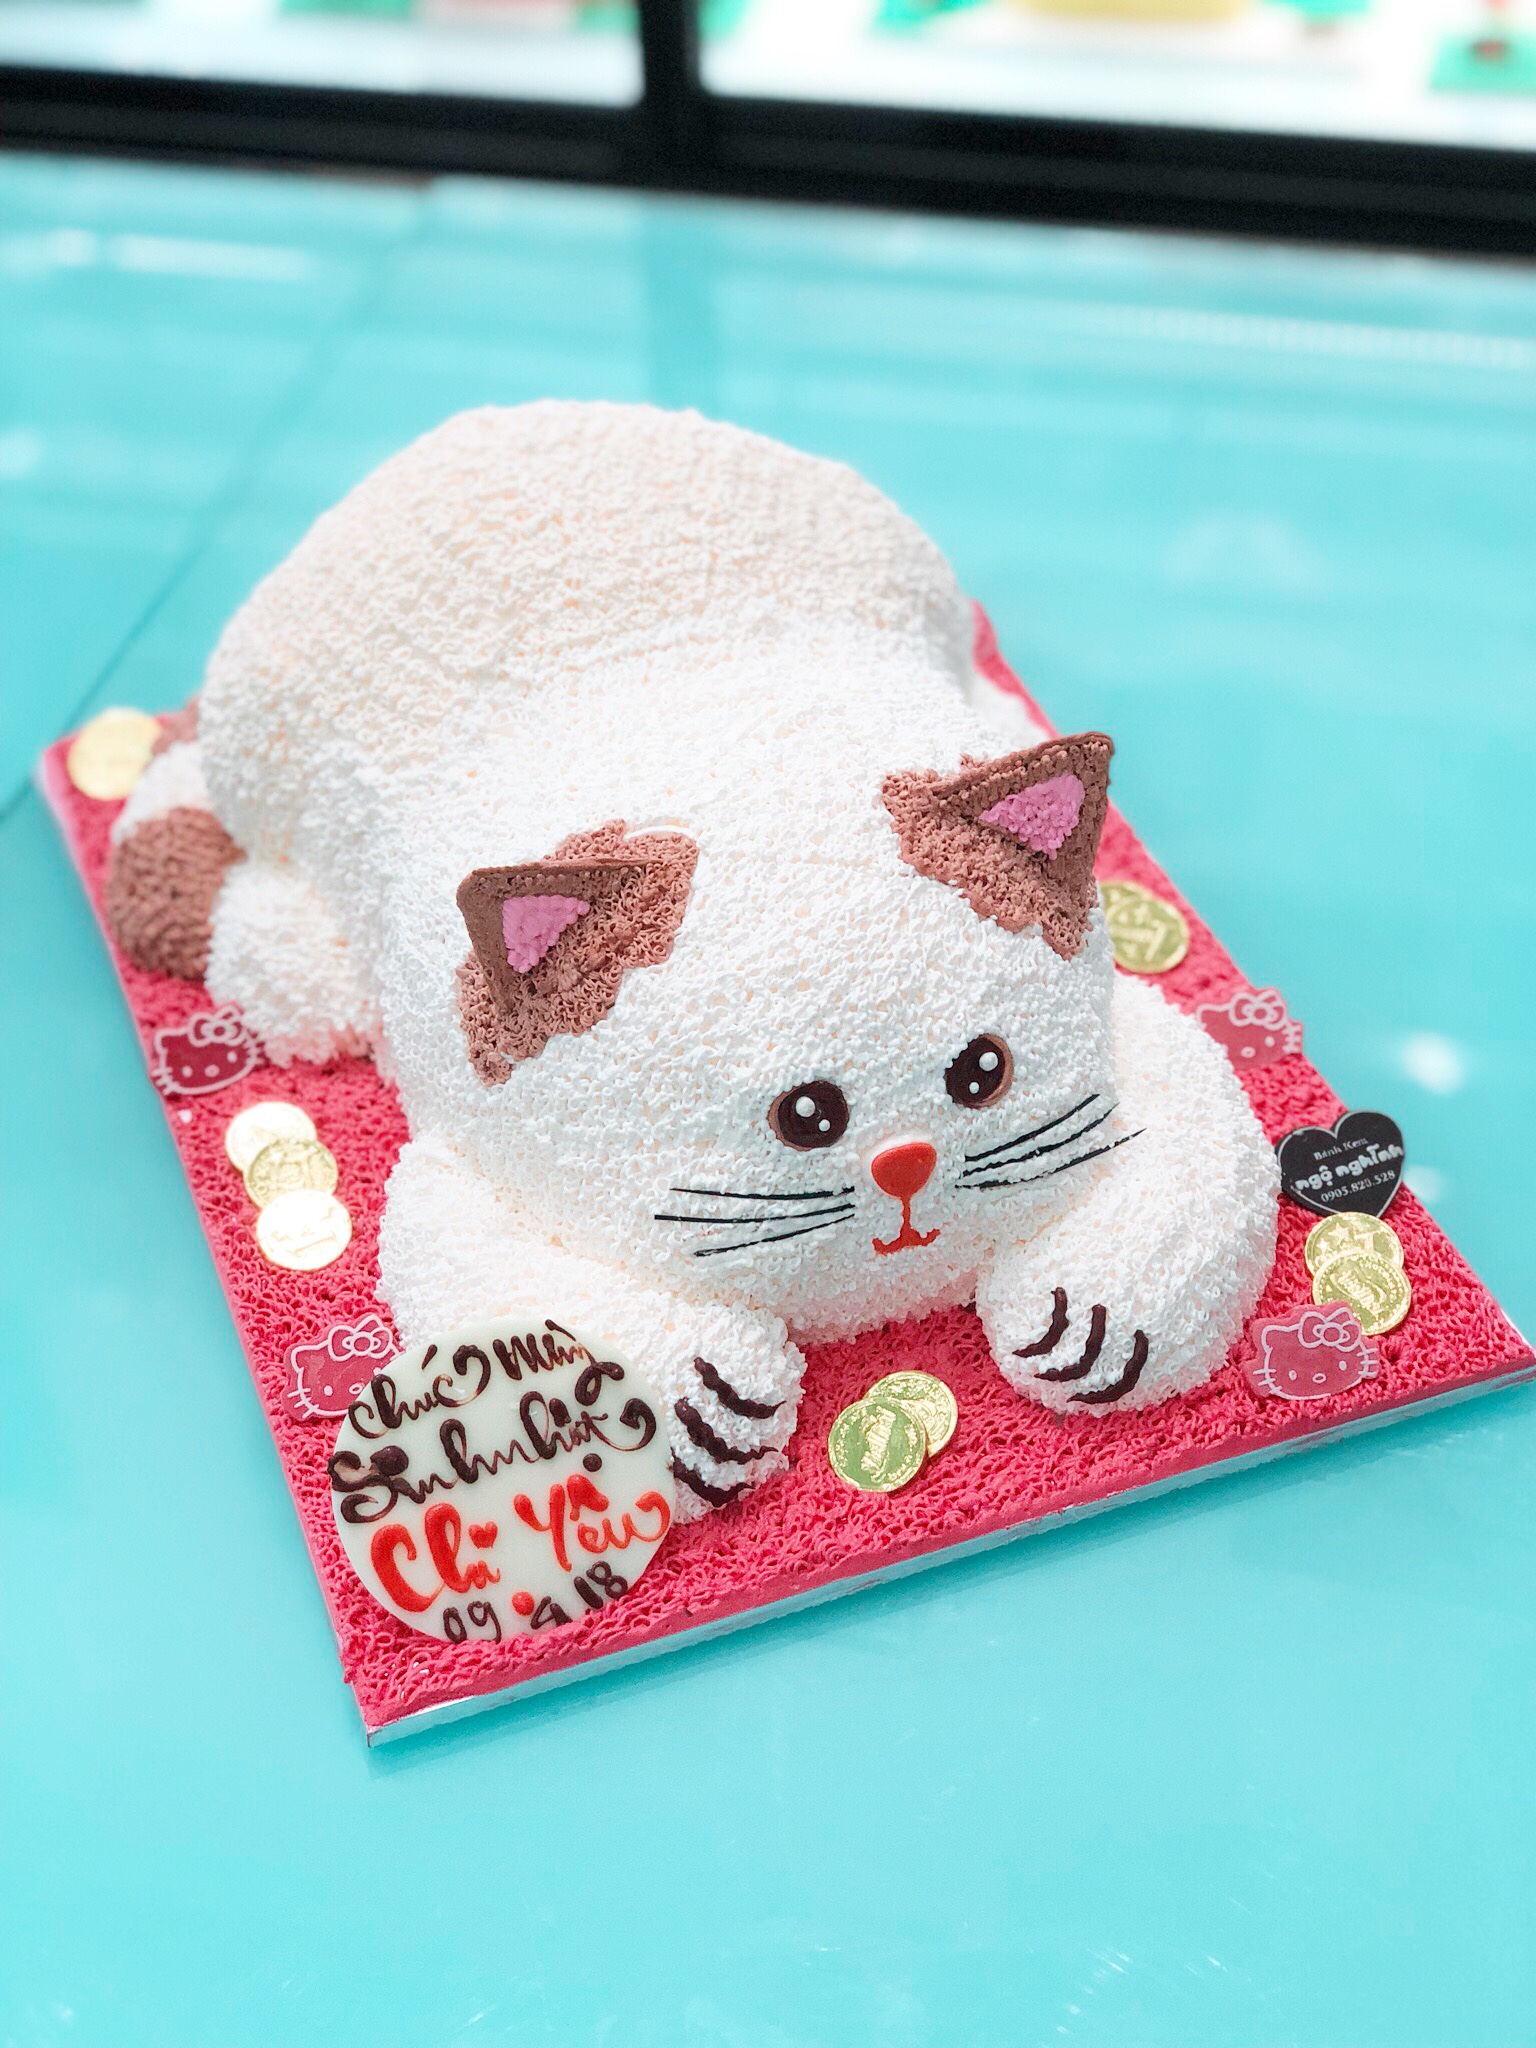 Bánh sinh nhật tạo hình 3d con mèo là cách tuyệt vời để làm cho bữa tiệc sinh nhật của bạn thêm phần đặc biệt. Bánh được tạo hình một con mèo siêu dễ thương và sống động sẽ khiến tất cả mọi người đều thích thú và mong muốn ăn thử. Thưởng thức bánh này chắc chắn sẽ khiến bạn có một kỷ niệm sinh nhật đáng nhớ.